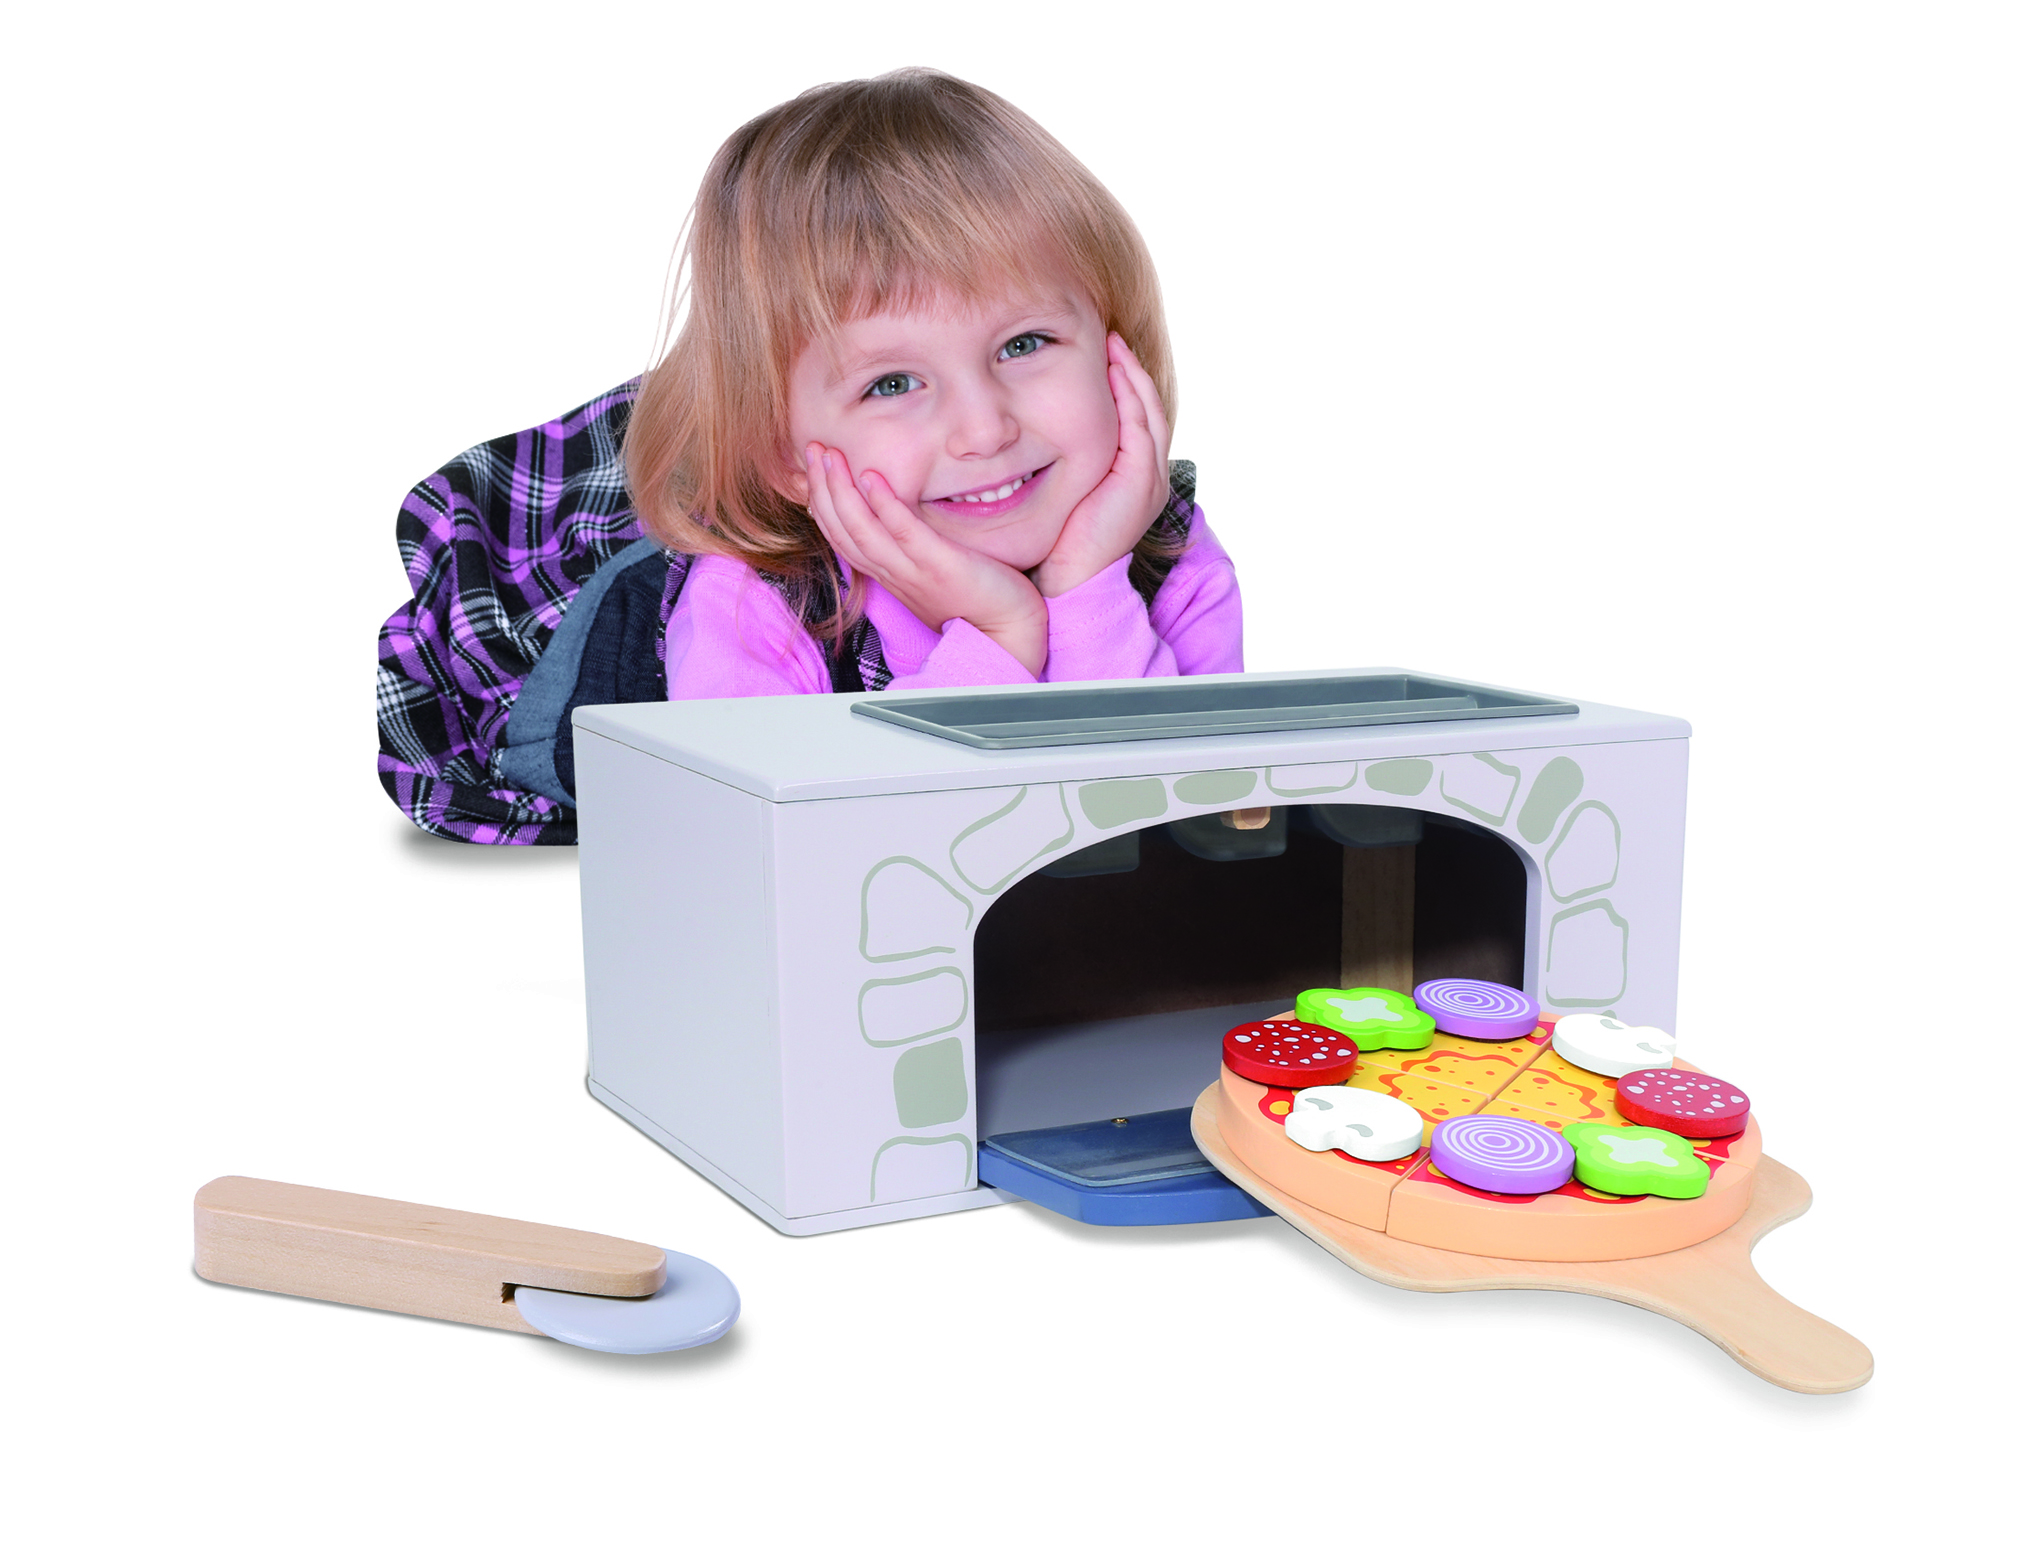 Jucarie intercativa pentru copii “Cuptor Pizza” cu accesorii, Material Lemn, Varsta+3 ani, Smartic®, multicolor [8]